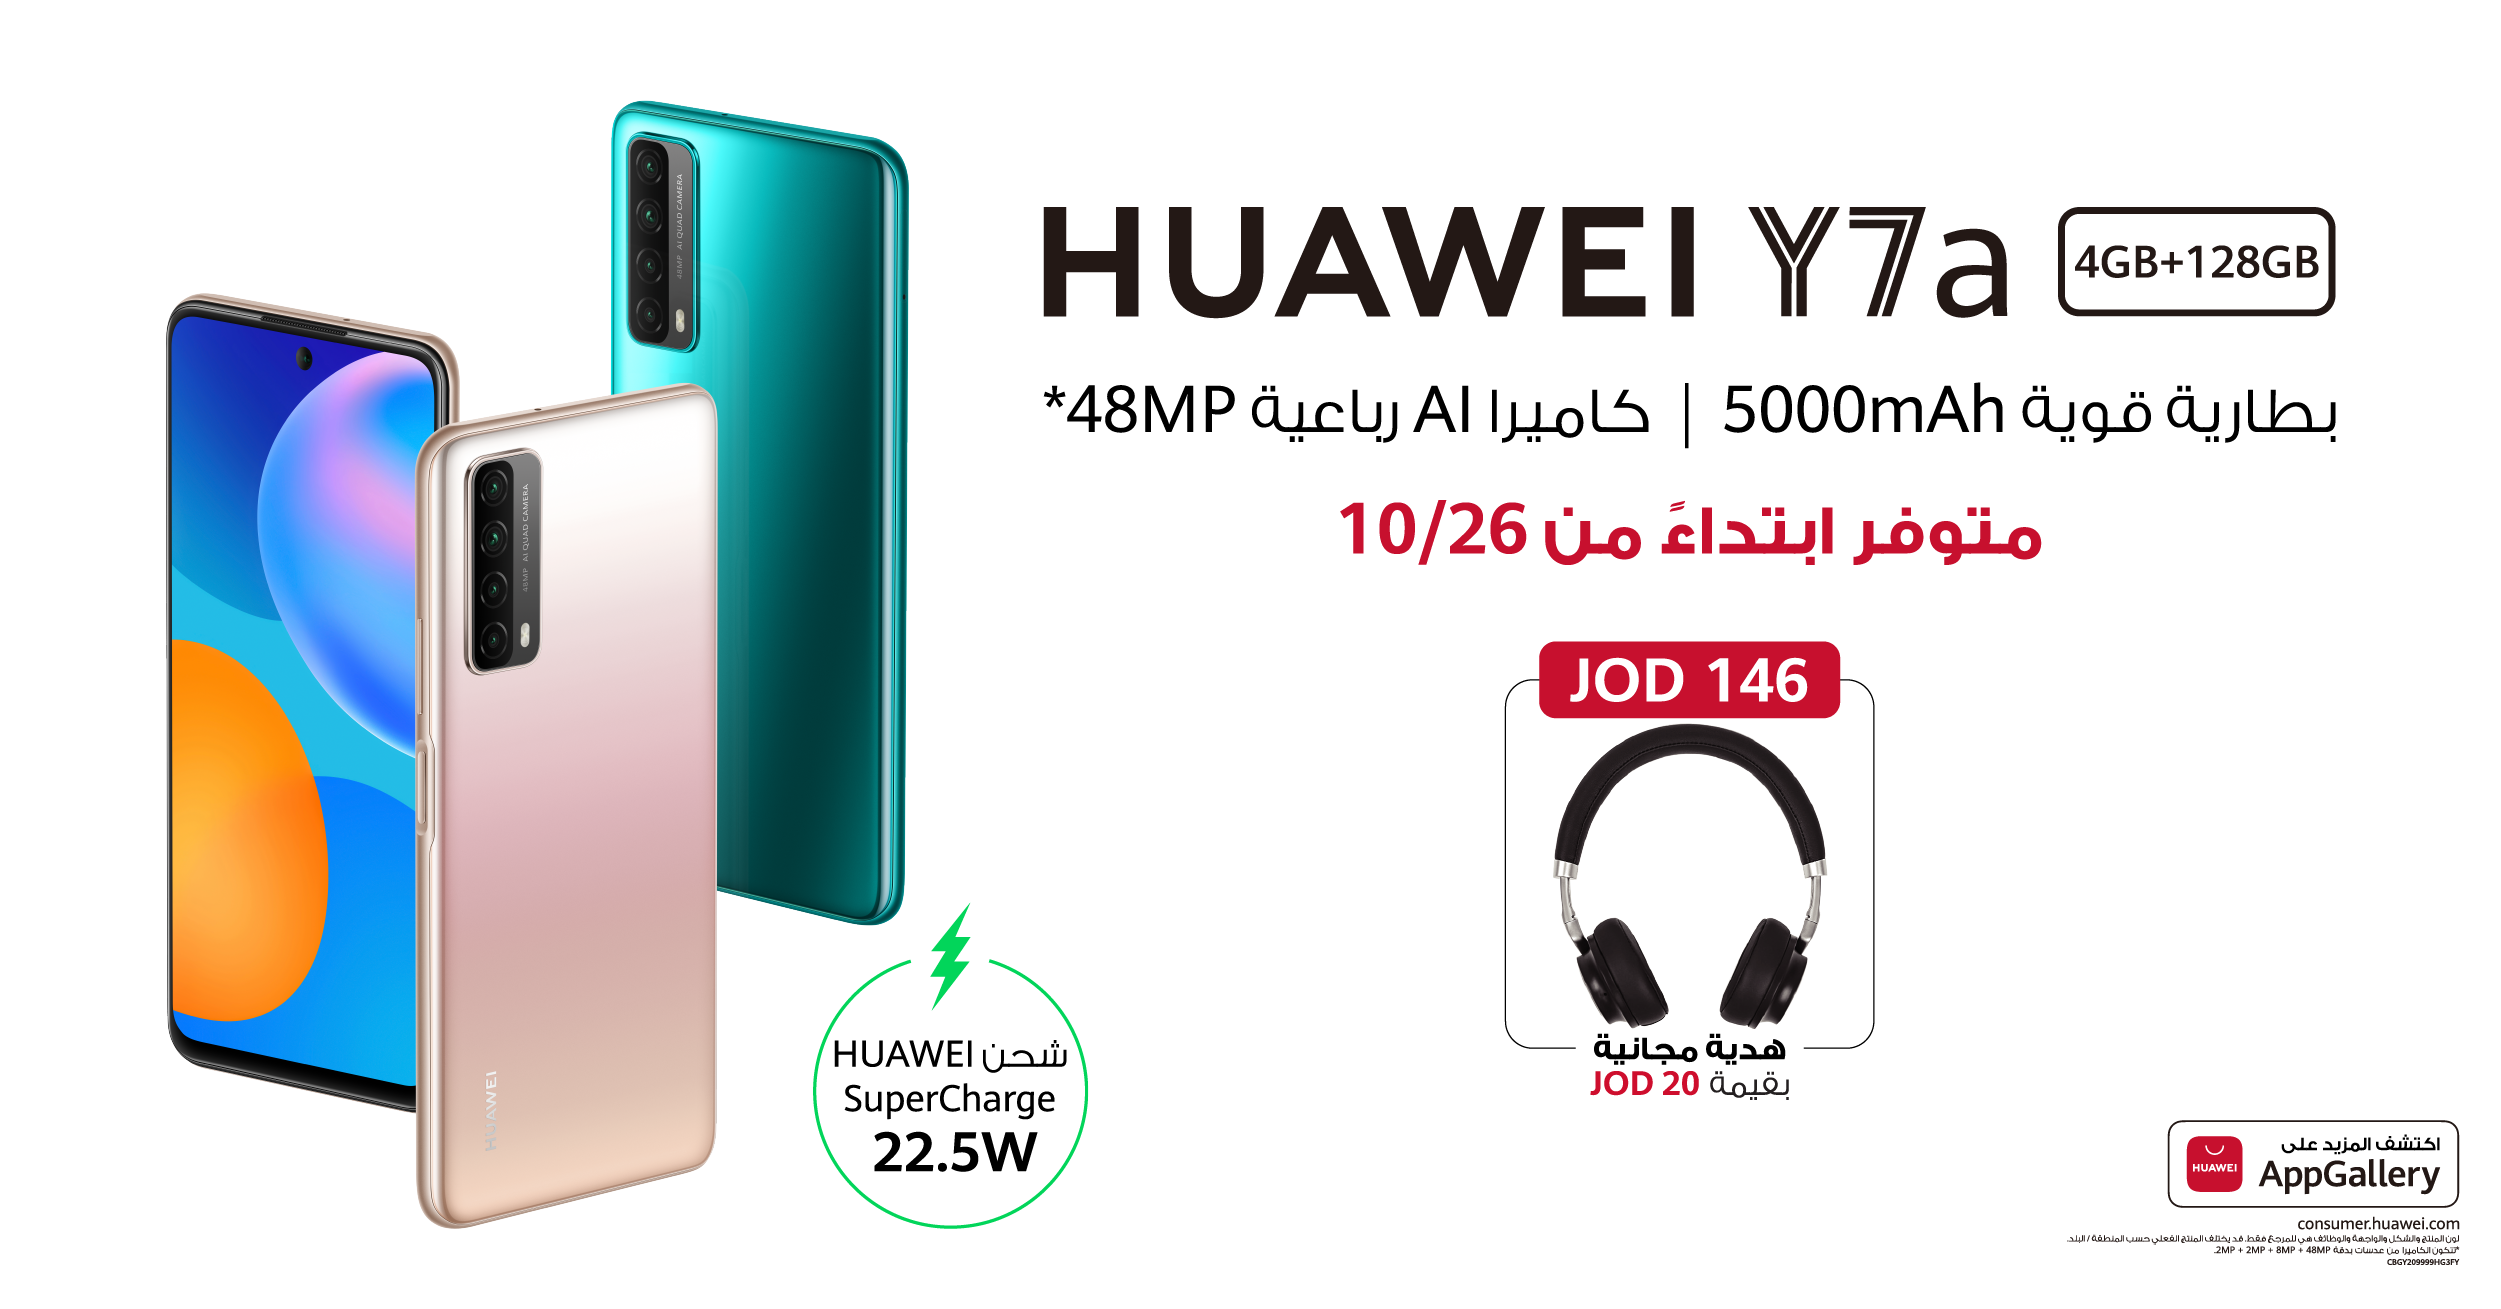 هاتف Huawei Y7a الجديد سيُتاح قريبًا في الأردن - جريدة الغد